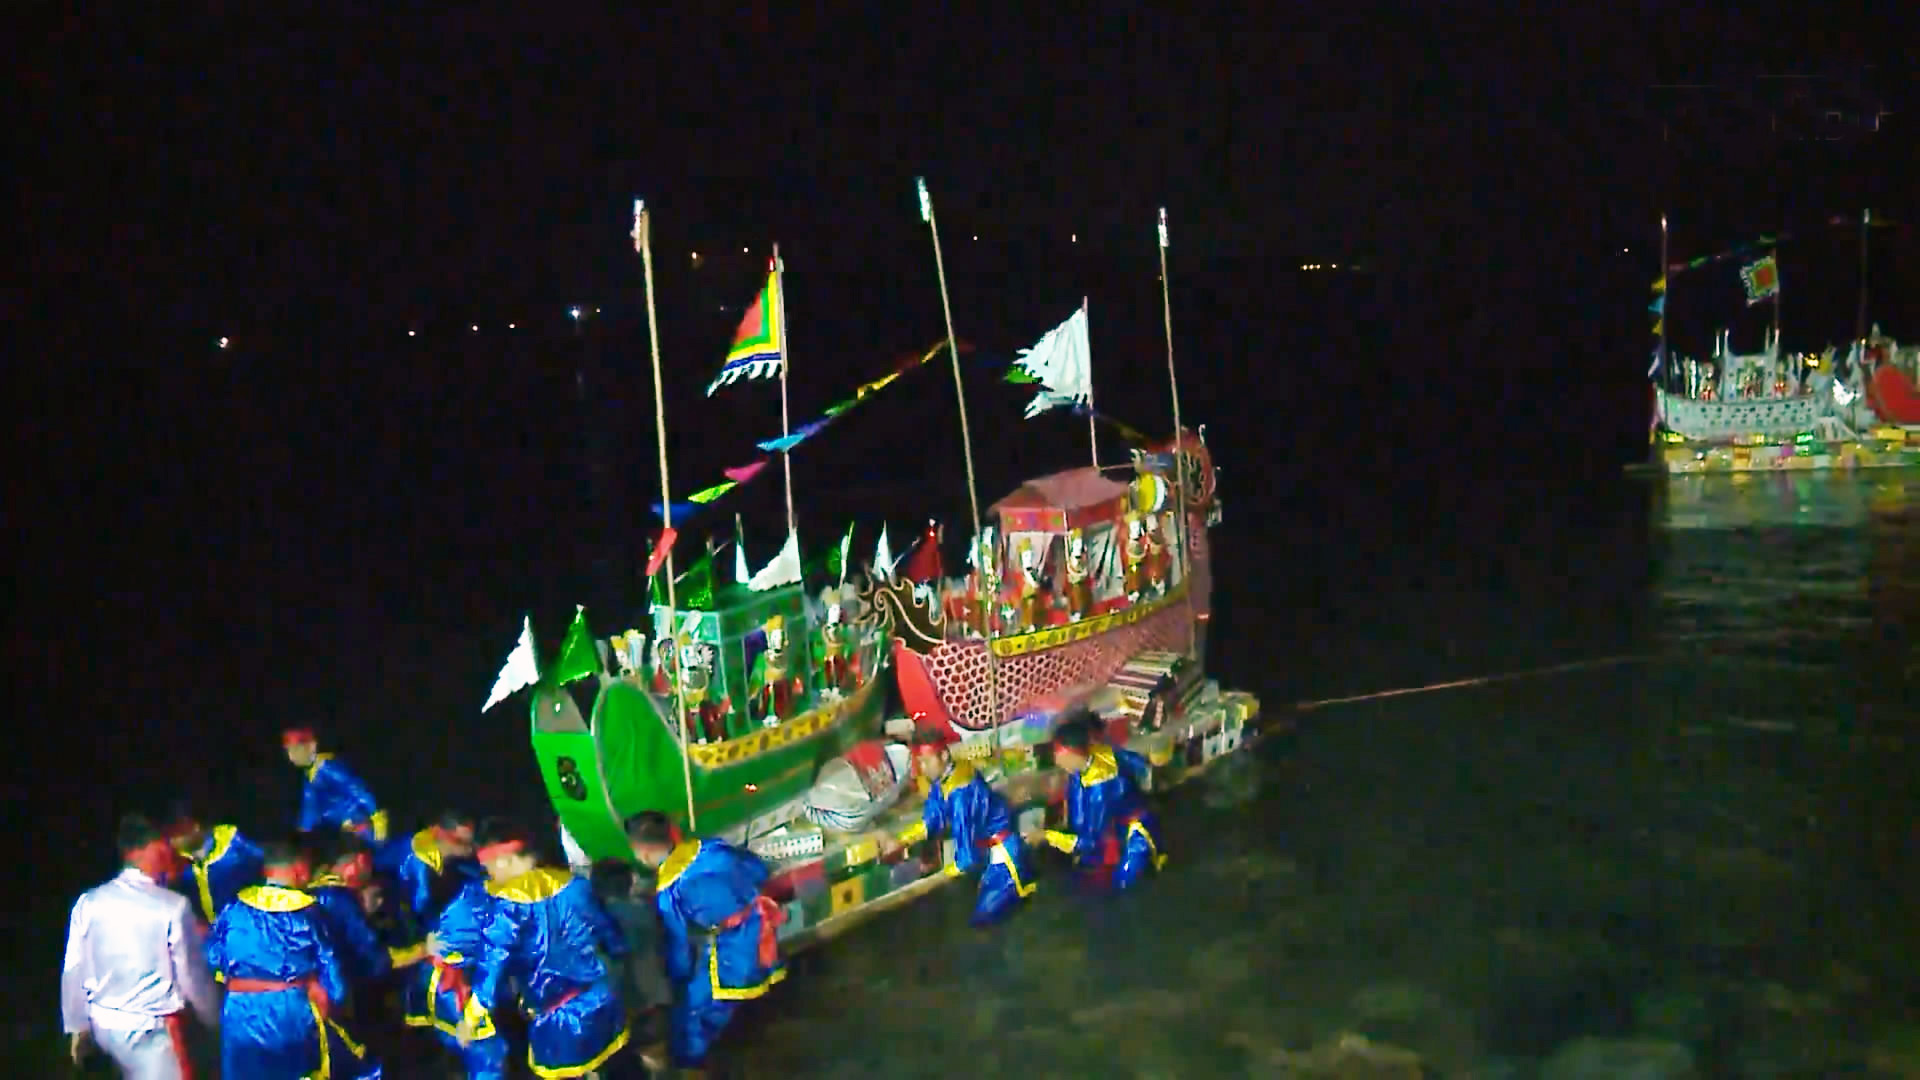 Thức đến 2 giờ sáng để xem thuyền giấy khổng lồ cúng lễ Nam Hải Thần Vương - 5